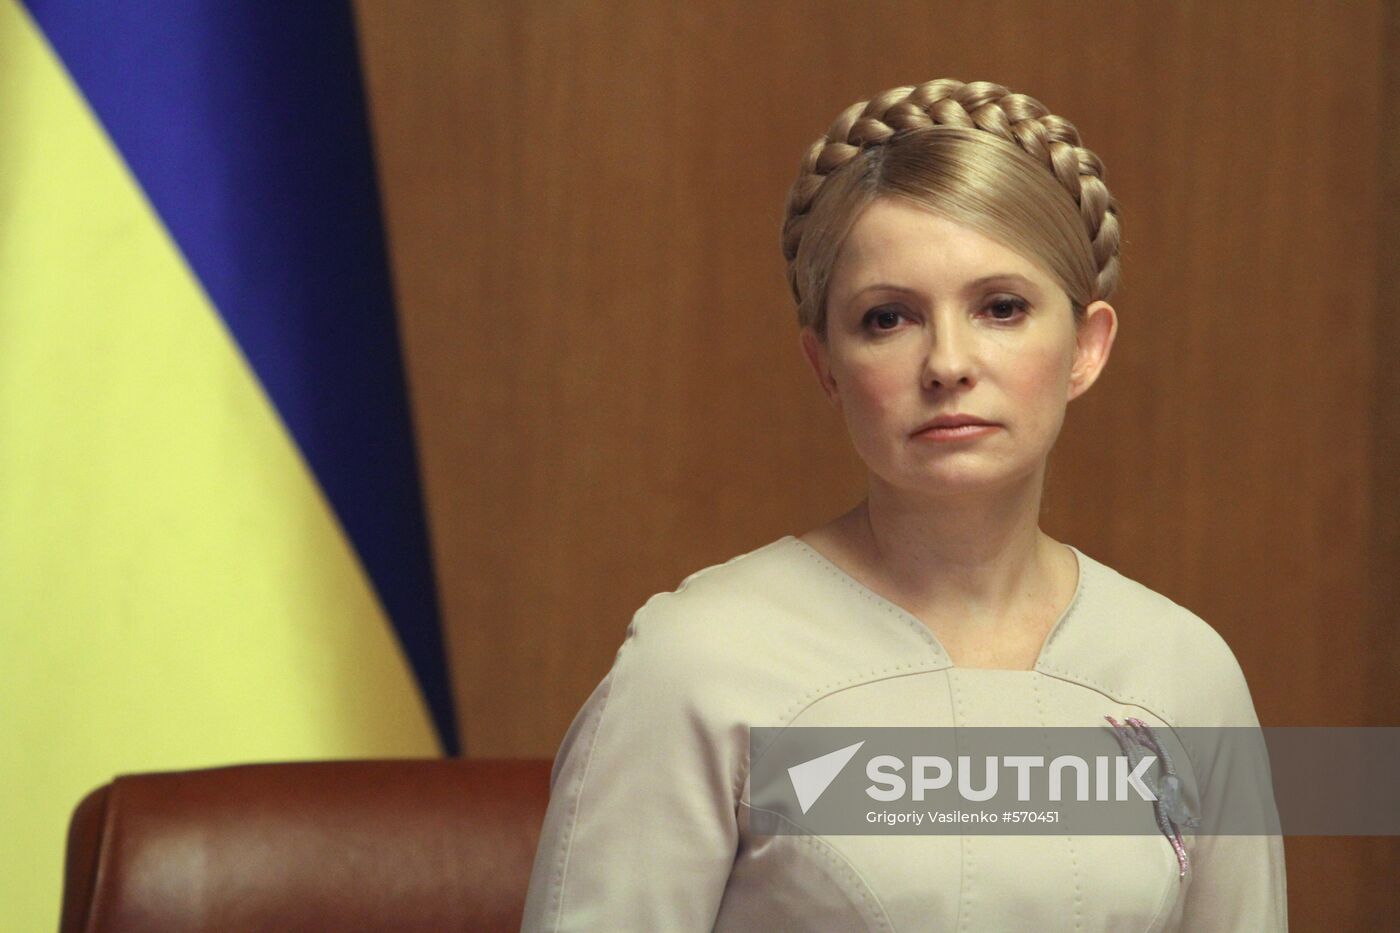 Yulia Tymoshenko holds meeting of Ukrainian Cabinet of Ministers